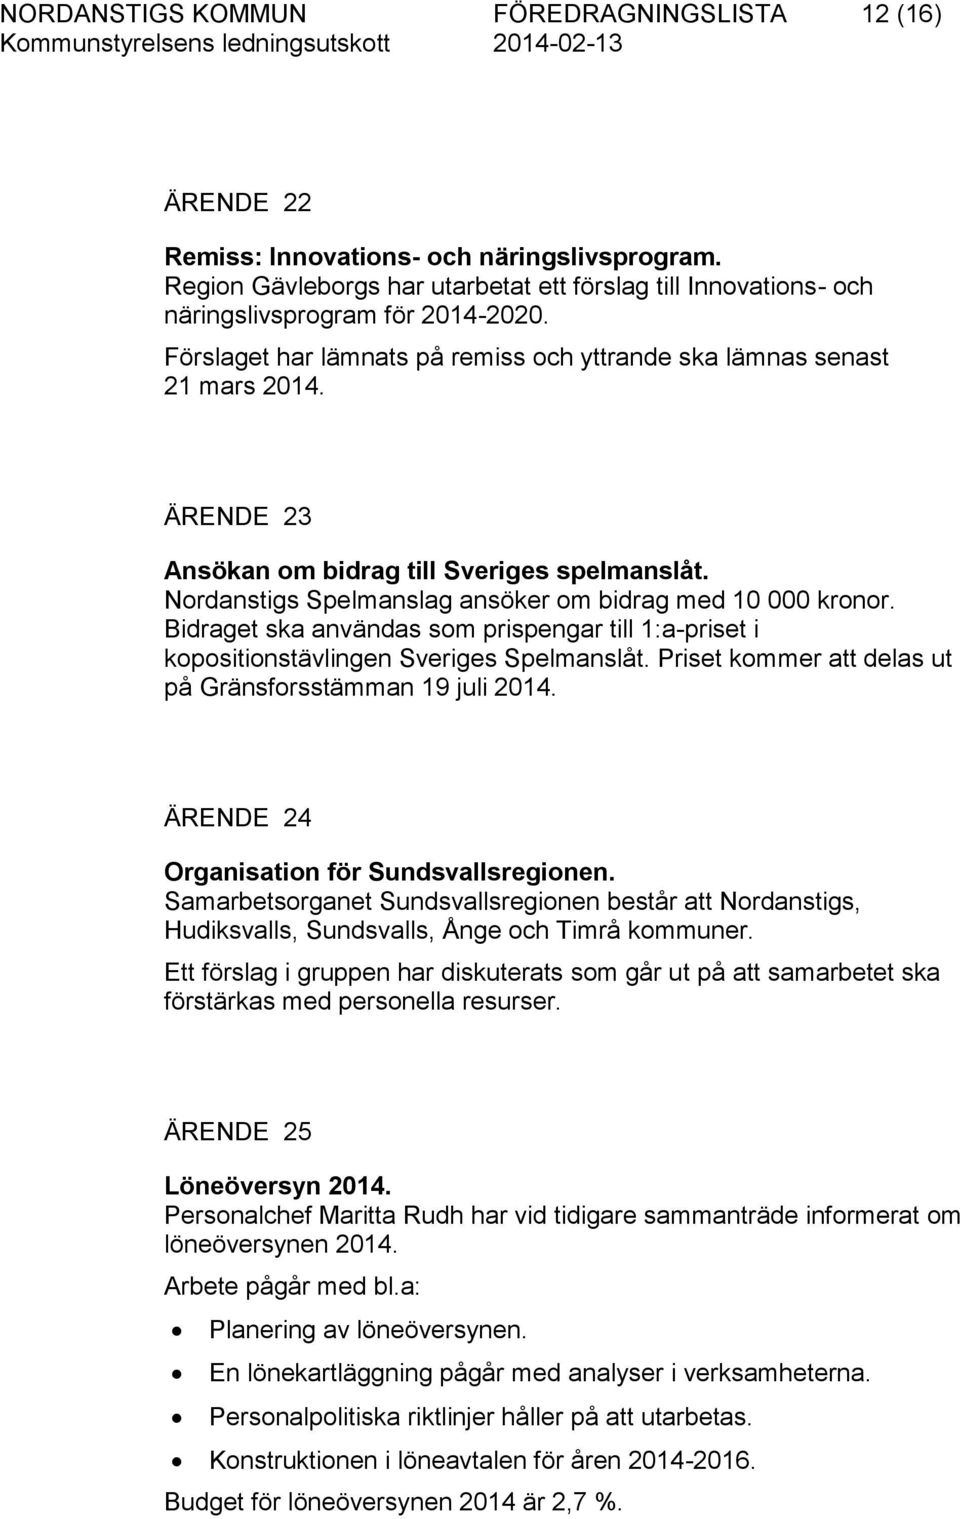 Bidraget ska användas som prispengar till 1:a-priset i kopositionstävlingen Sveriges Spelmanslåt. Priset kommer att delas ut på Gränsforsstämman 19 juli 2014.